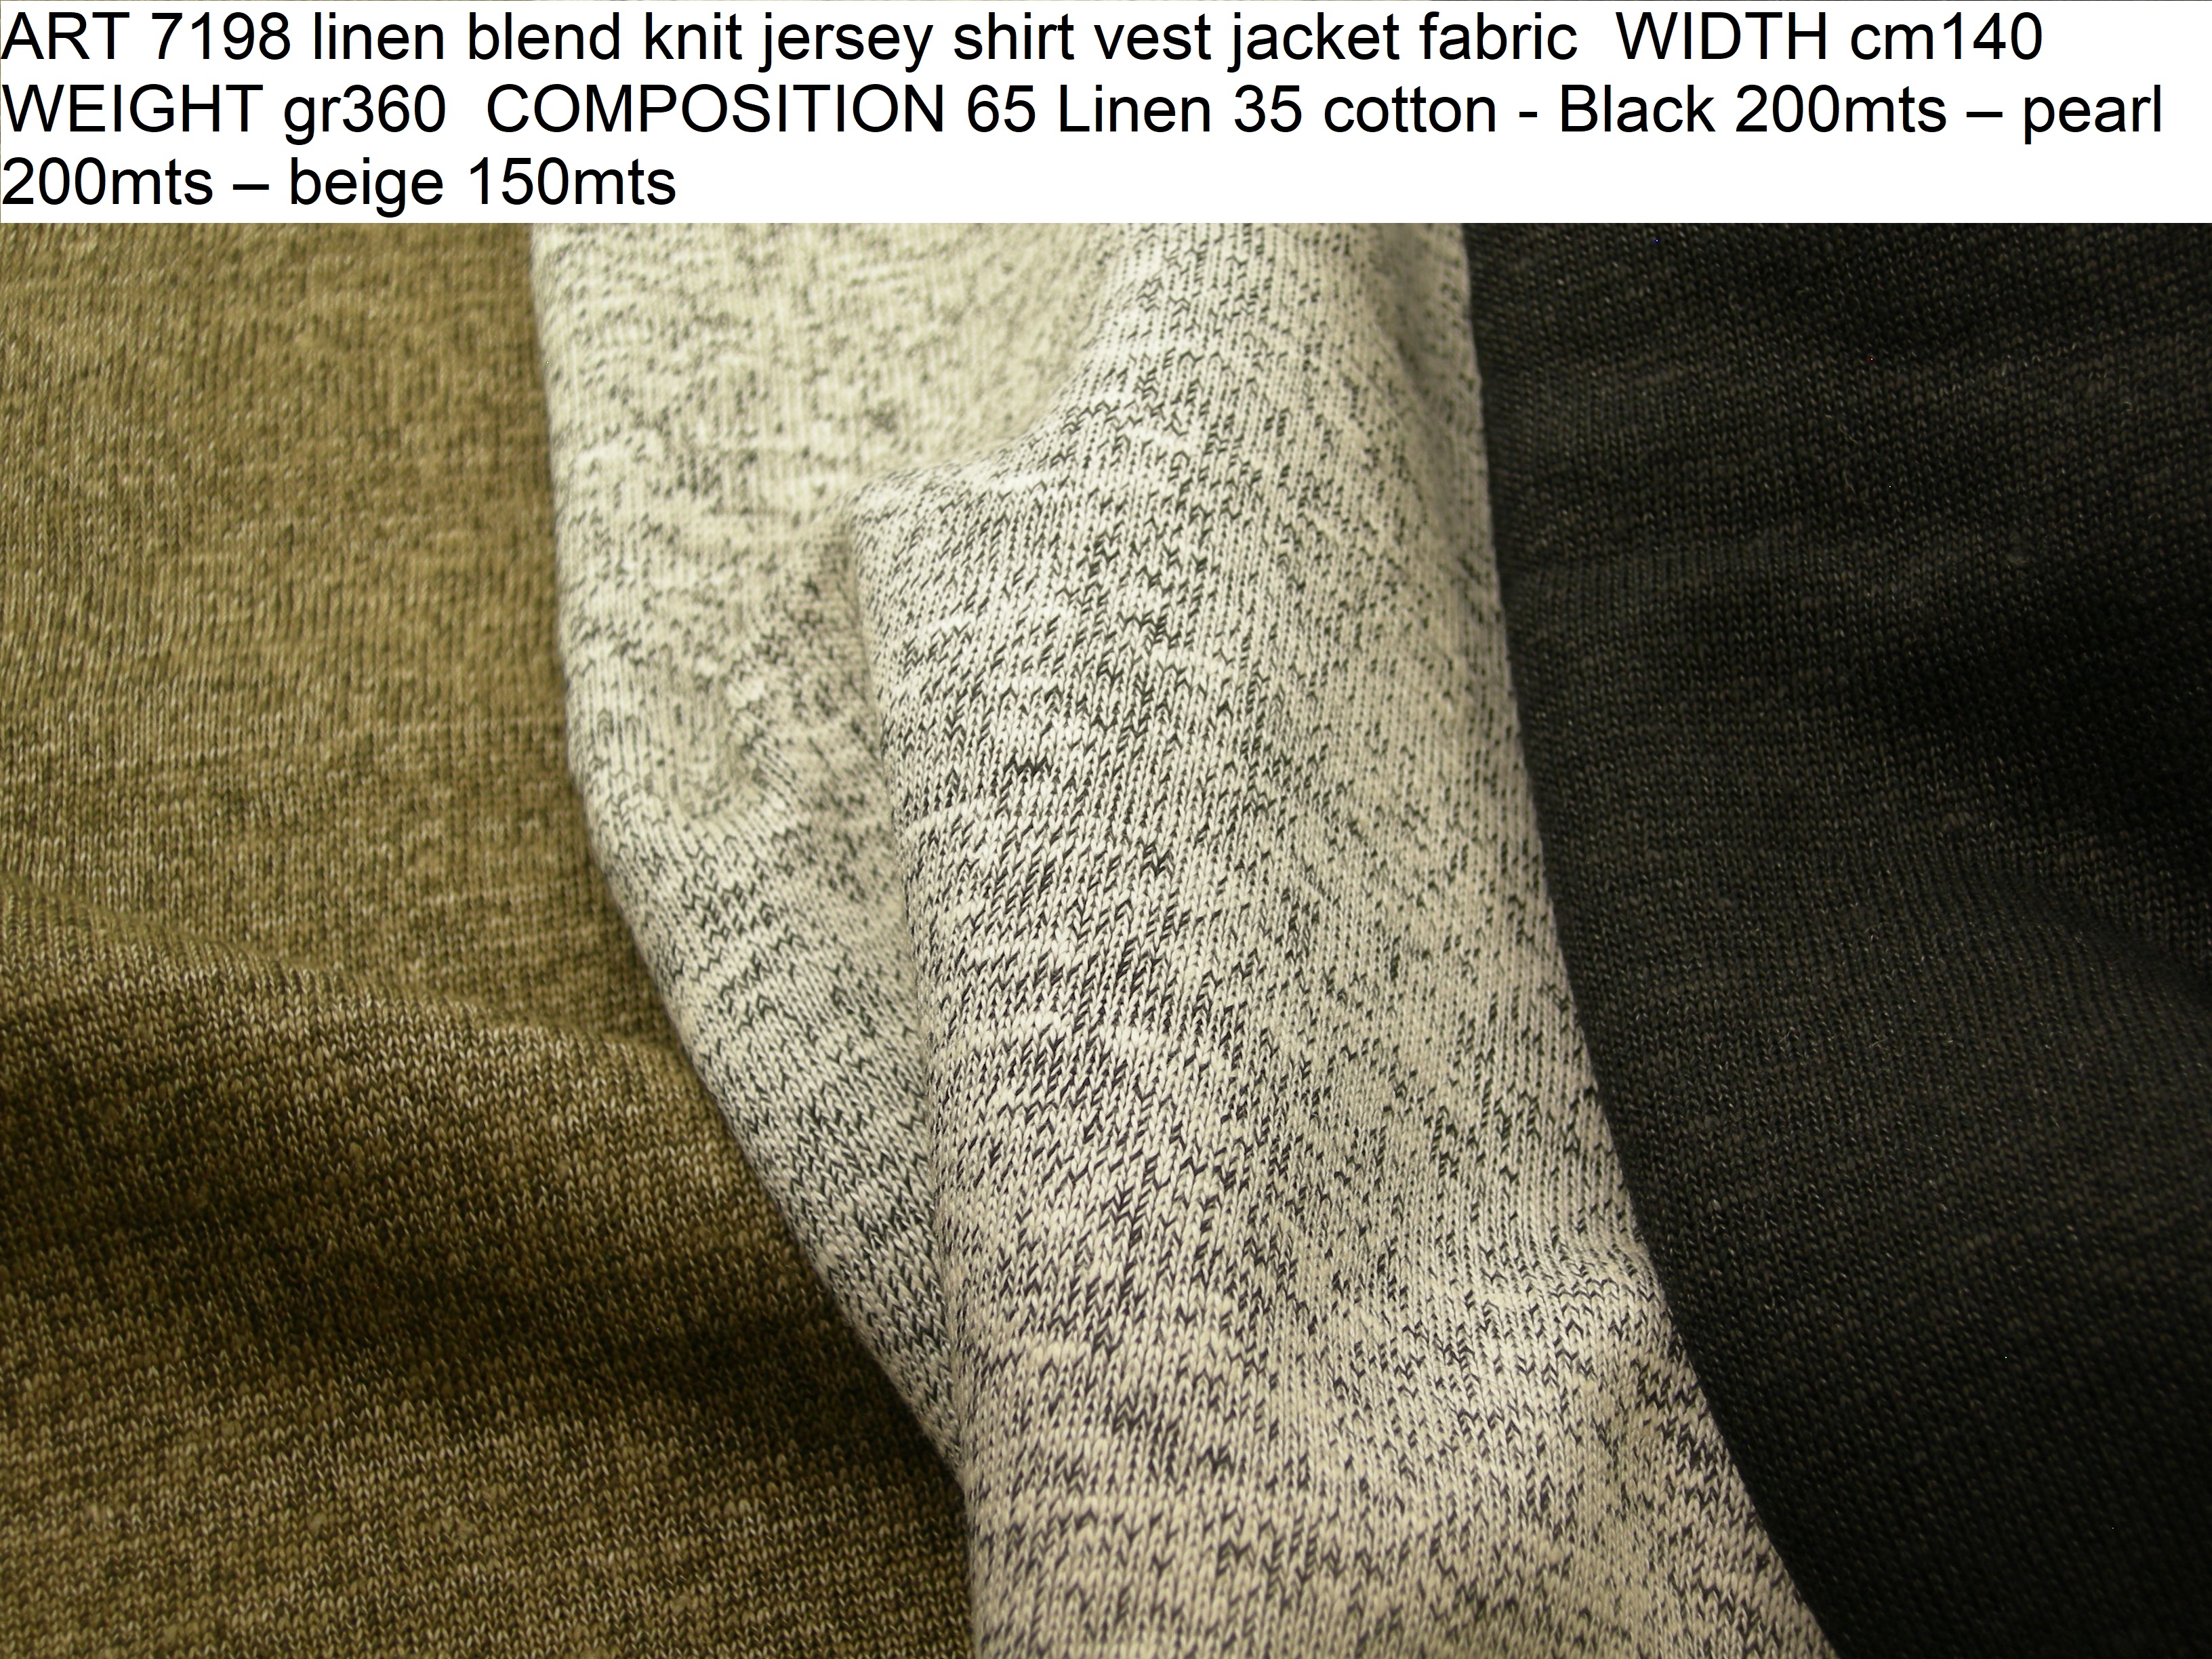 ART 7198 linen blend knit jersey shirt vest jacket fabric WIDTH cm140 WEIGHT gr360 COMPOSITION 65 Linen 35 cotton - Black 200mts – pearl 200mts – beige 150mts